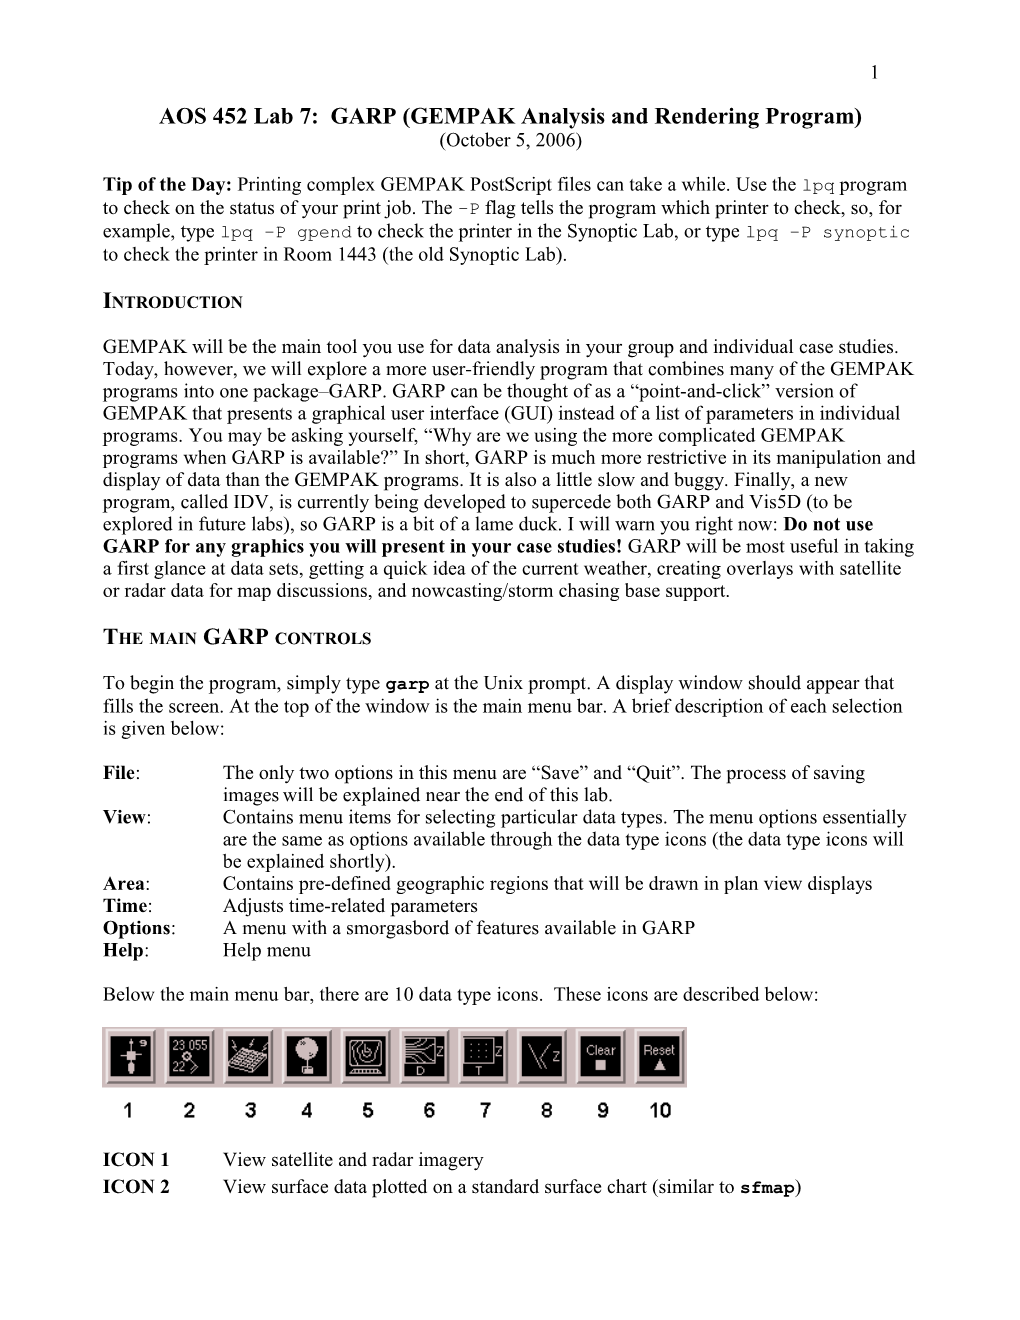 AOS 452 Lab 7: GARP (GEMPAK Analysis and Rendering Program)